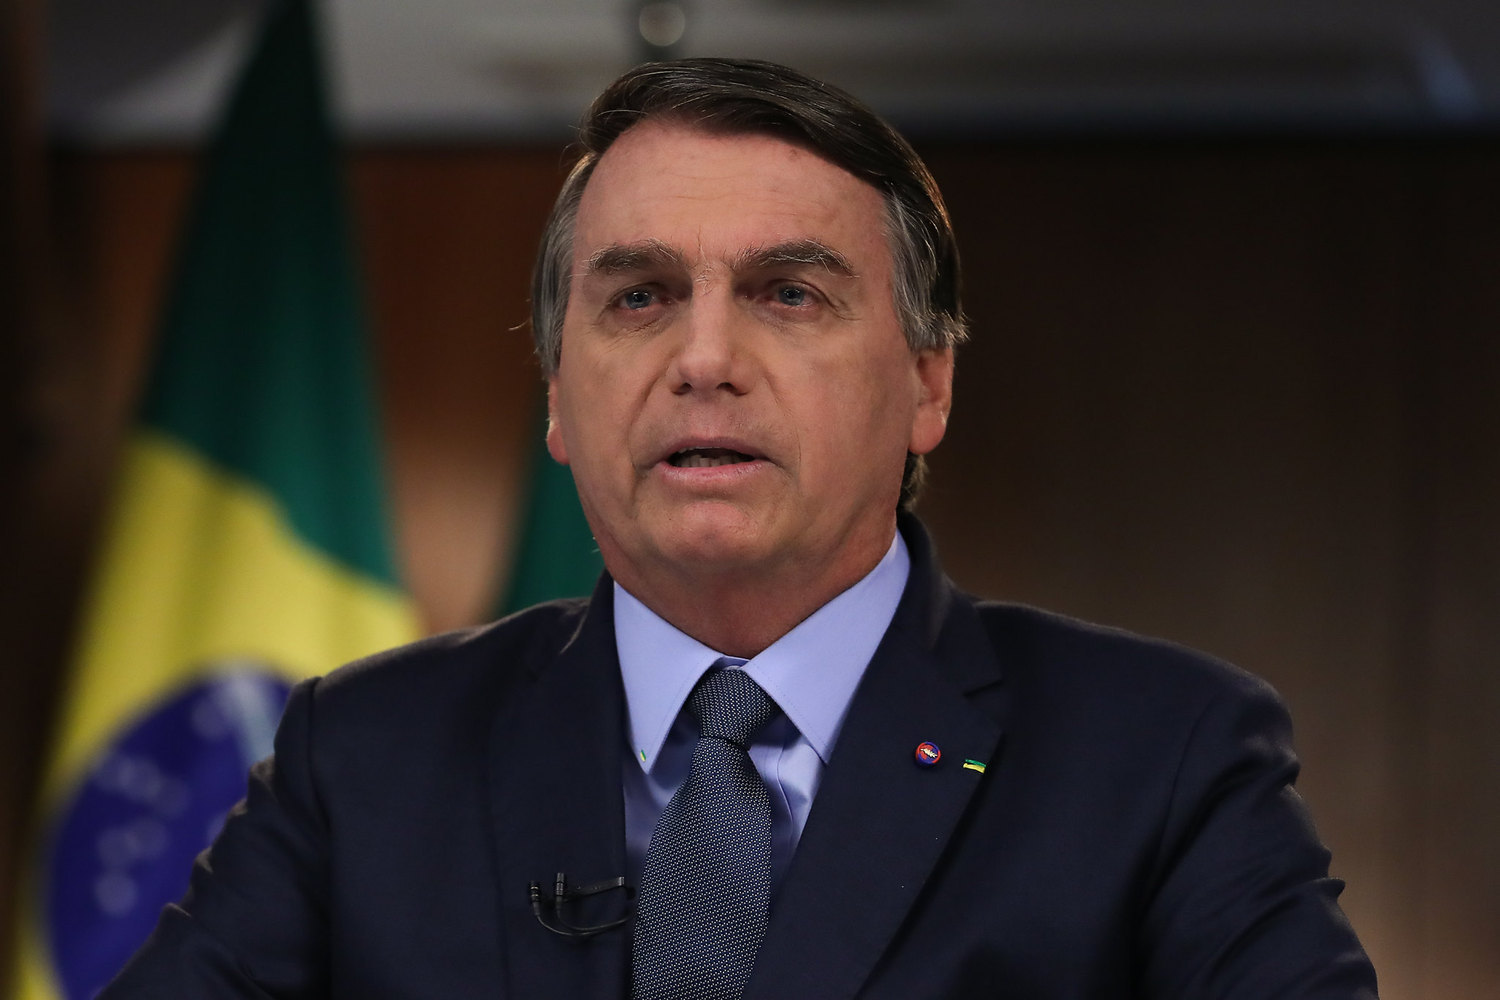 A repercussão deslocada do discurso de Bolsonaro entre seus